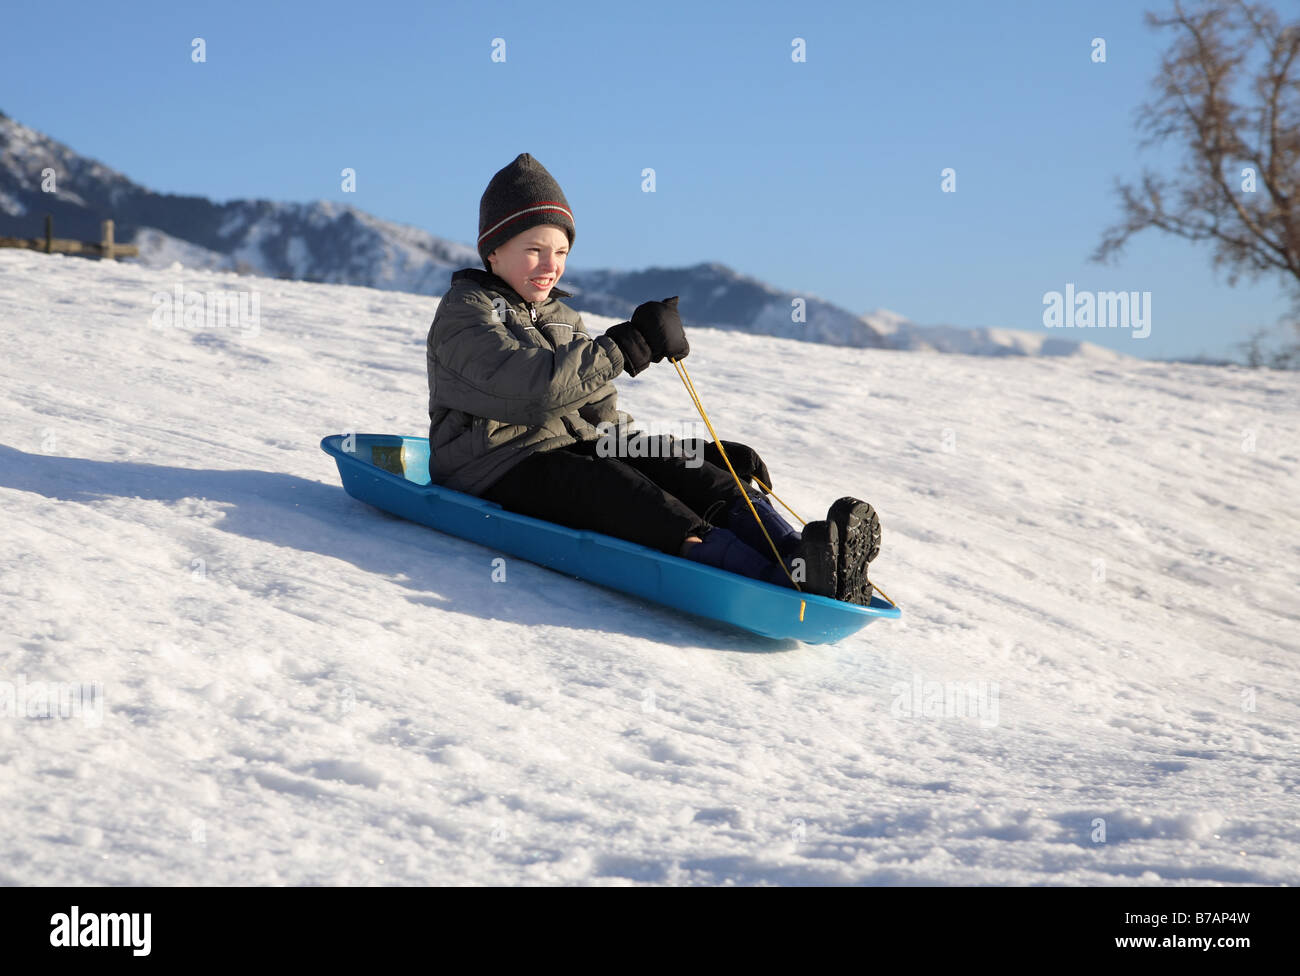 Joven trineos bajando una colina nevados en un trineo azul Foto de stock